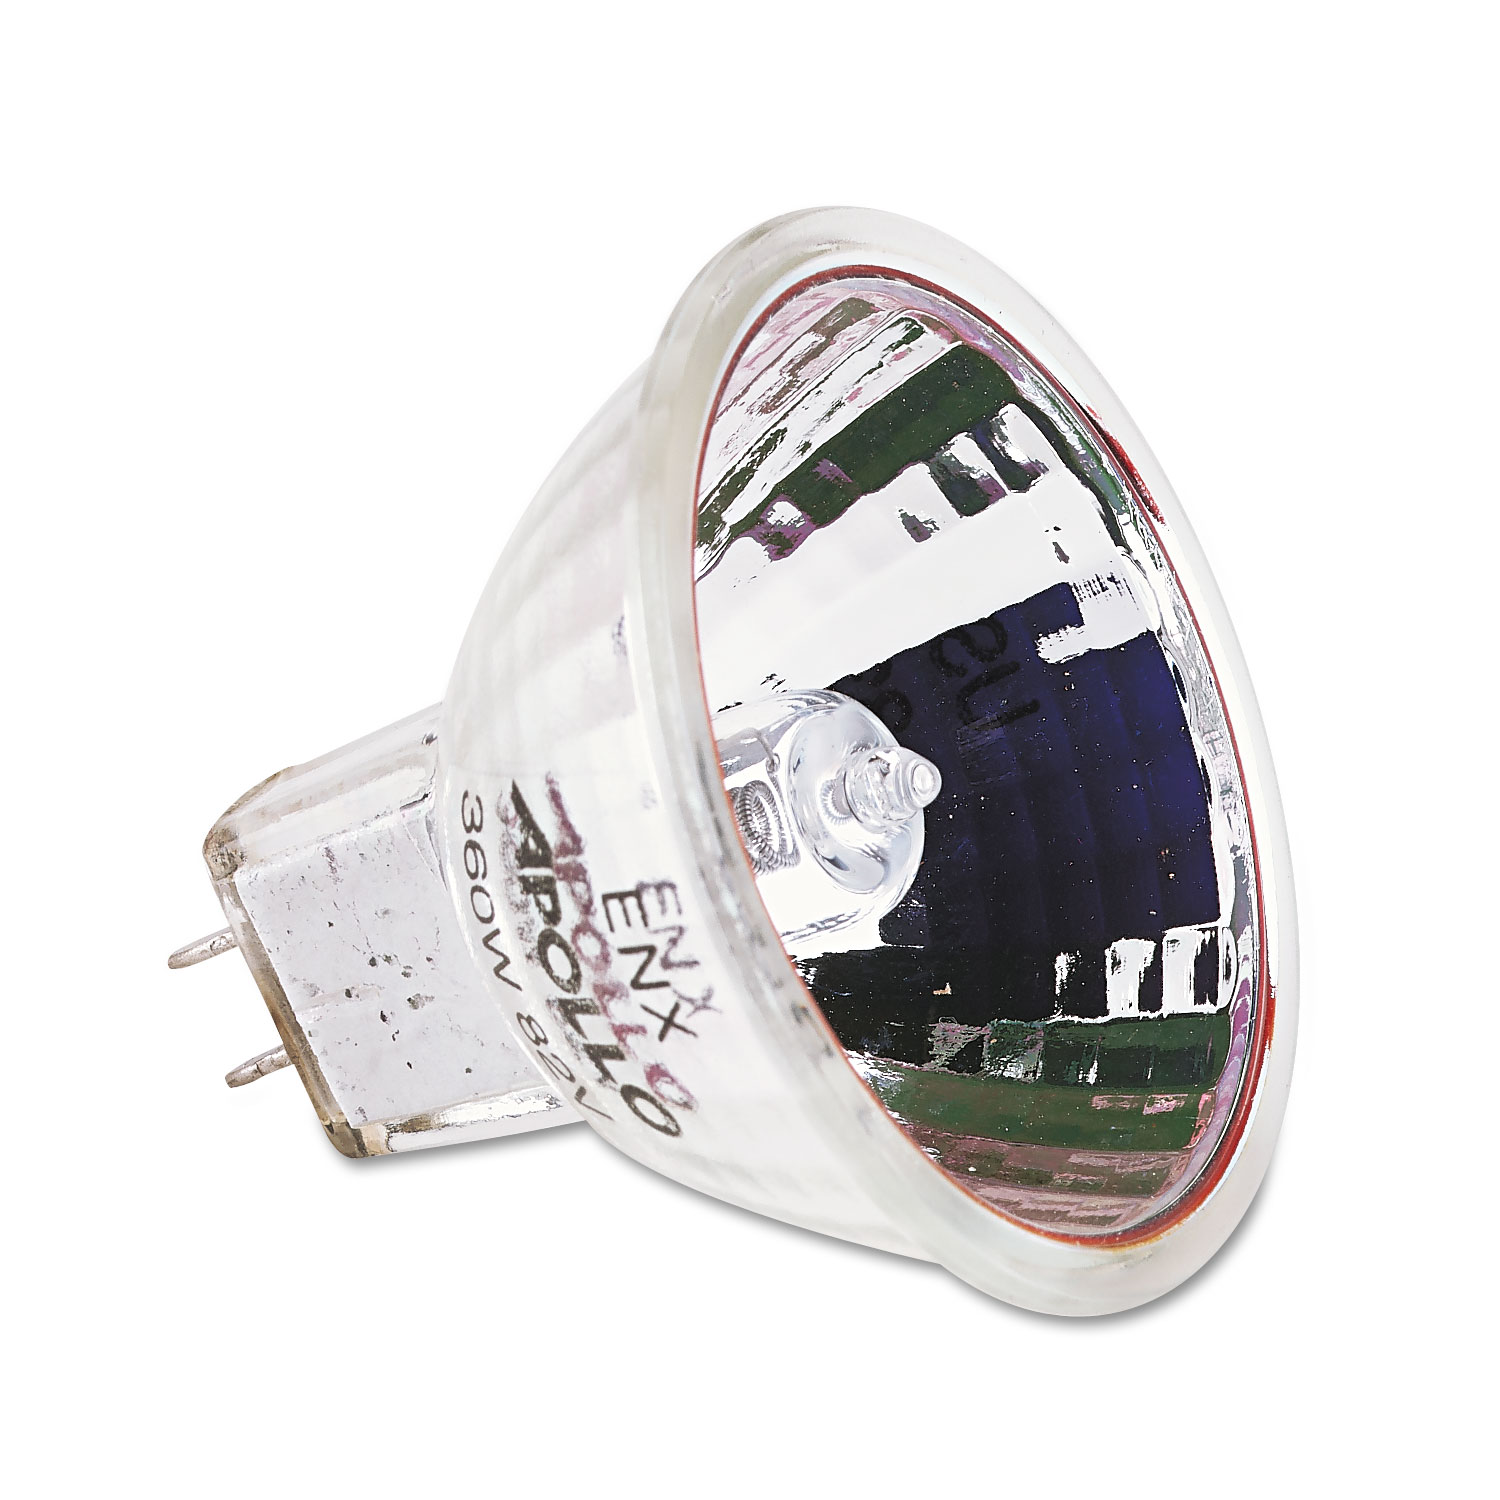 Bulb for Apolloeclipse/Concept/3M/Elmo/Buhl/Da-lite and Dukane Products, 82V